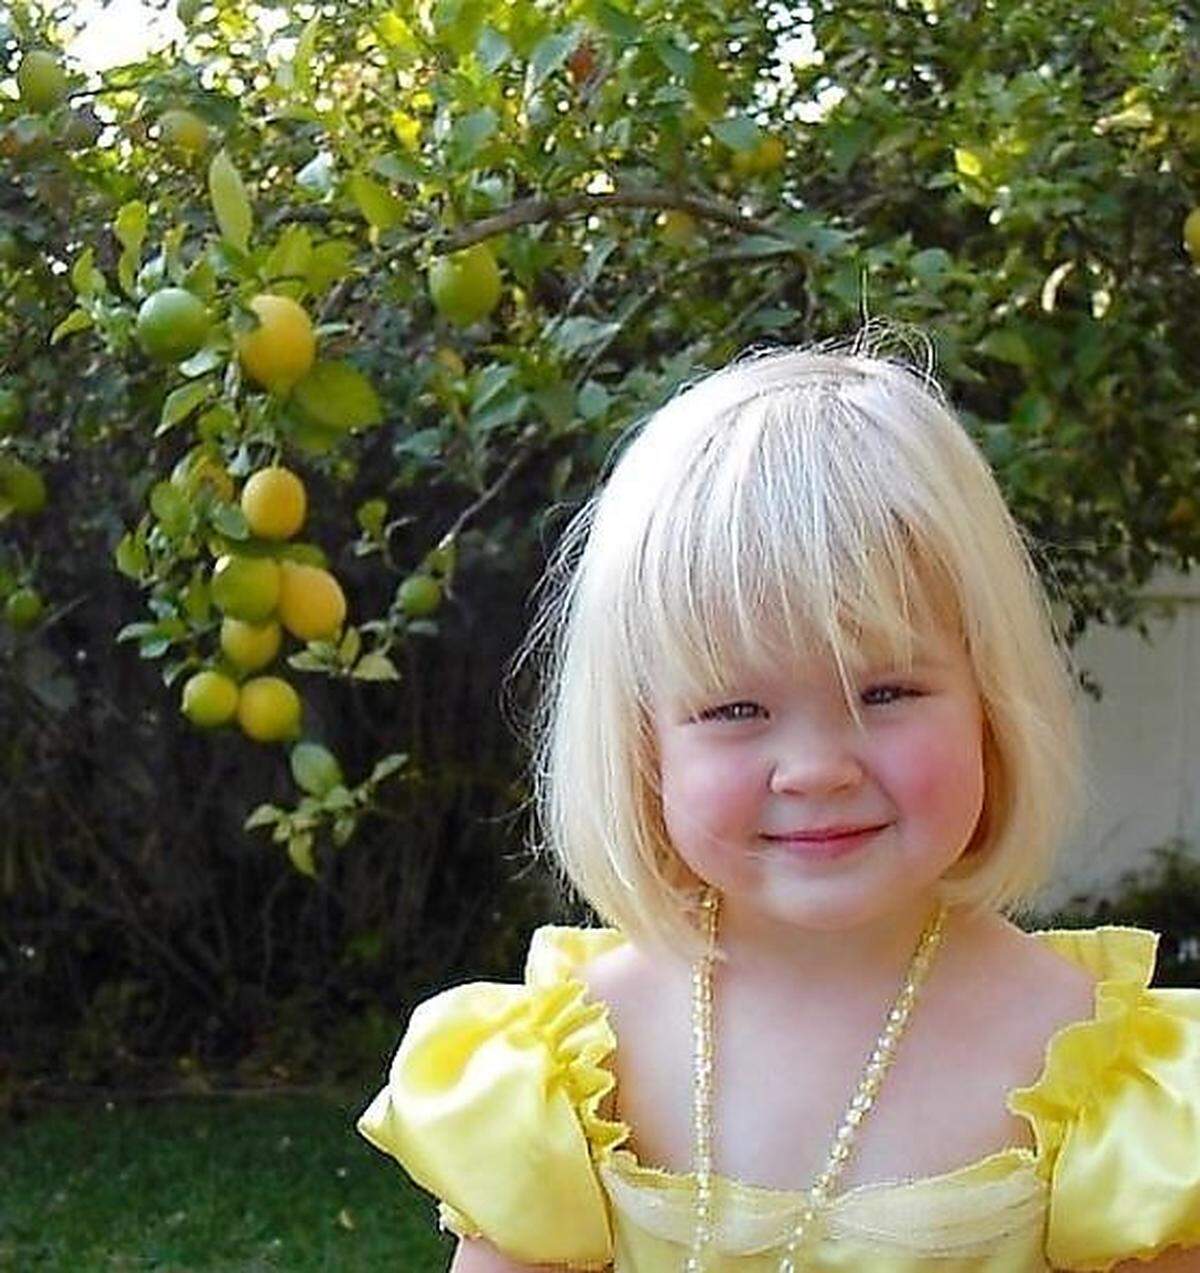 Vor noch nicht allzu langer Zeit wurde dieses entzückende Foto einer kleinen verkleideten Prinzessin vor Zitronenbaum aufgenommen.